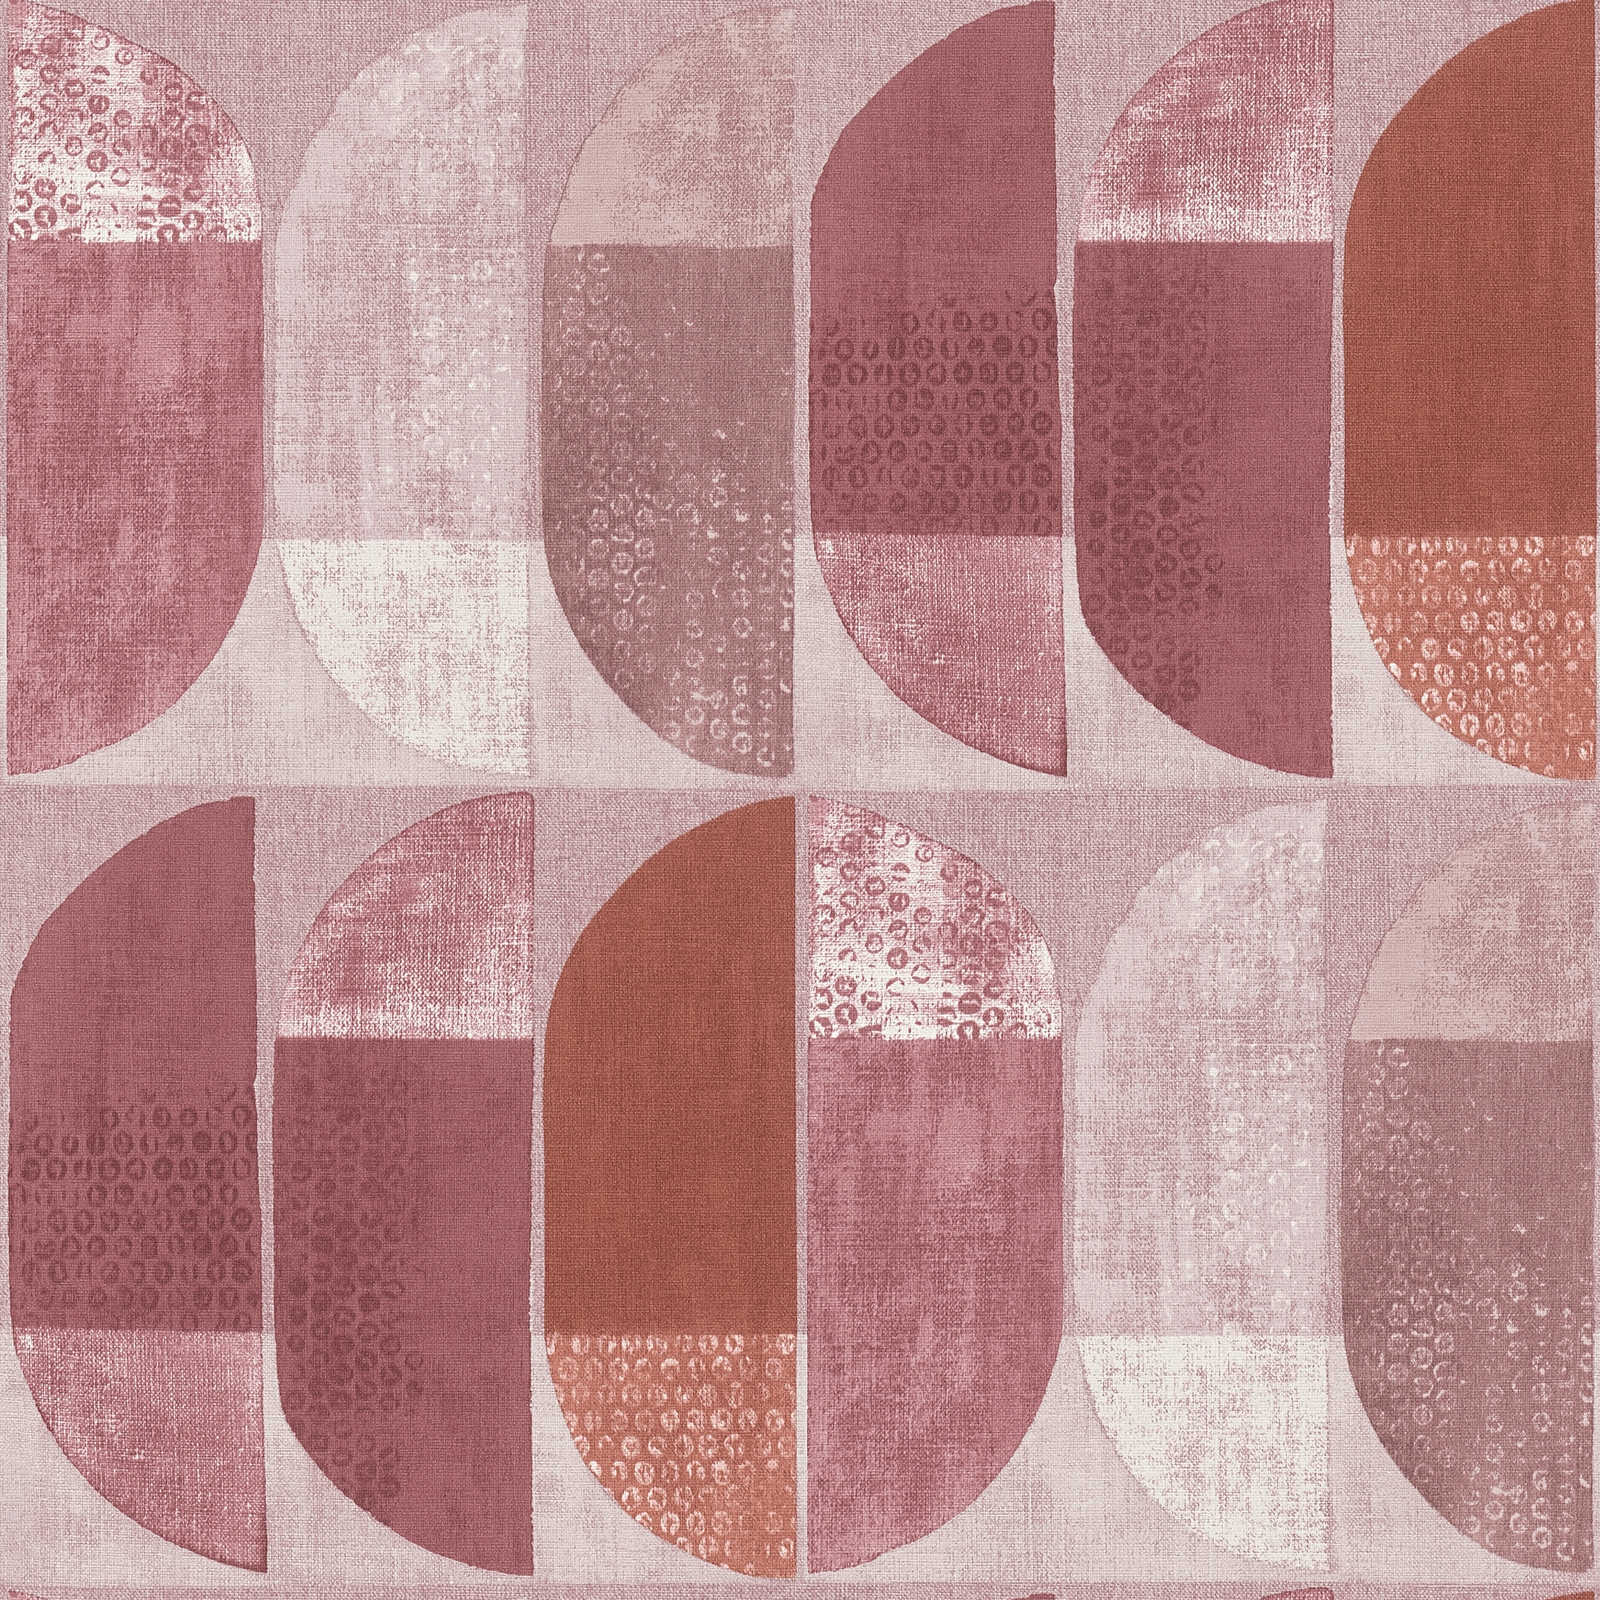         Wallpaper retro design in Scandinavian style - red, pink, beige
    